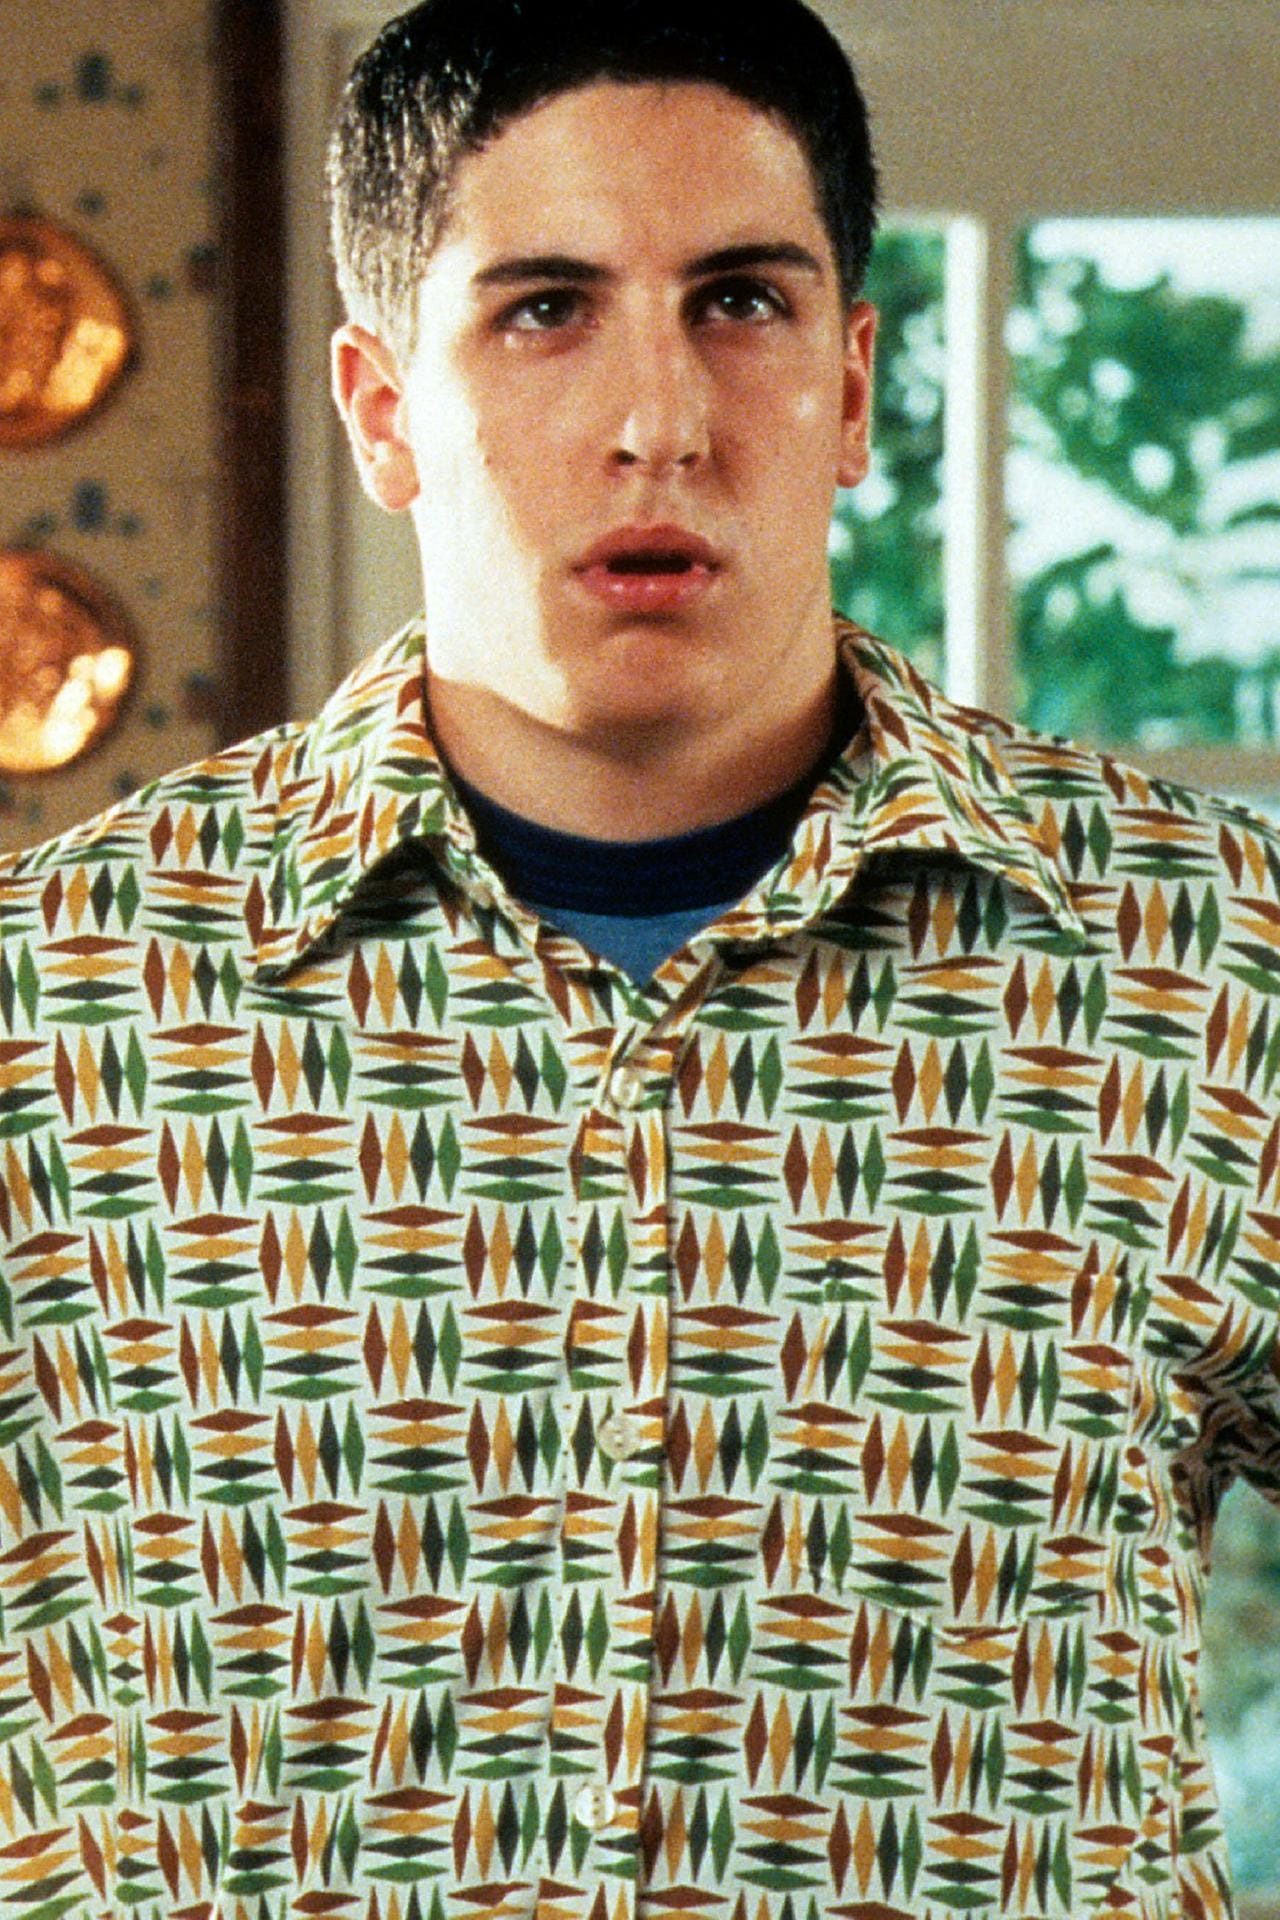 Jason Biggs übernahm die Hauptrolle der Teenie-Komödie. Der damals 21-Jährige spielte den unerfahren Jim.